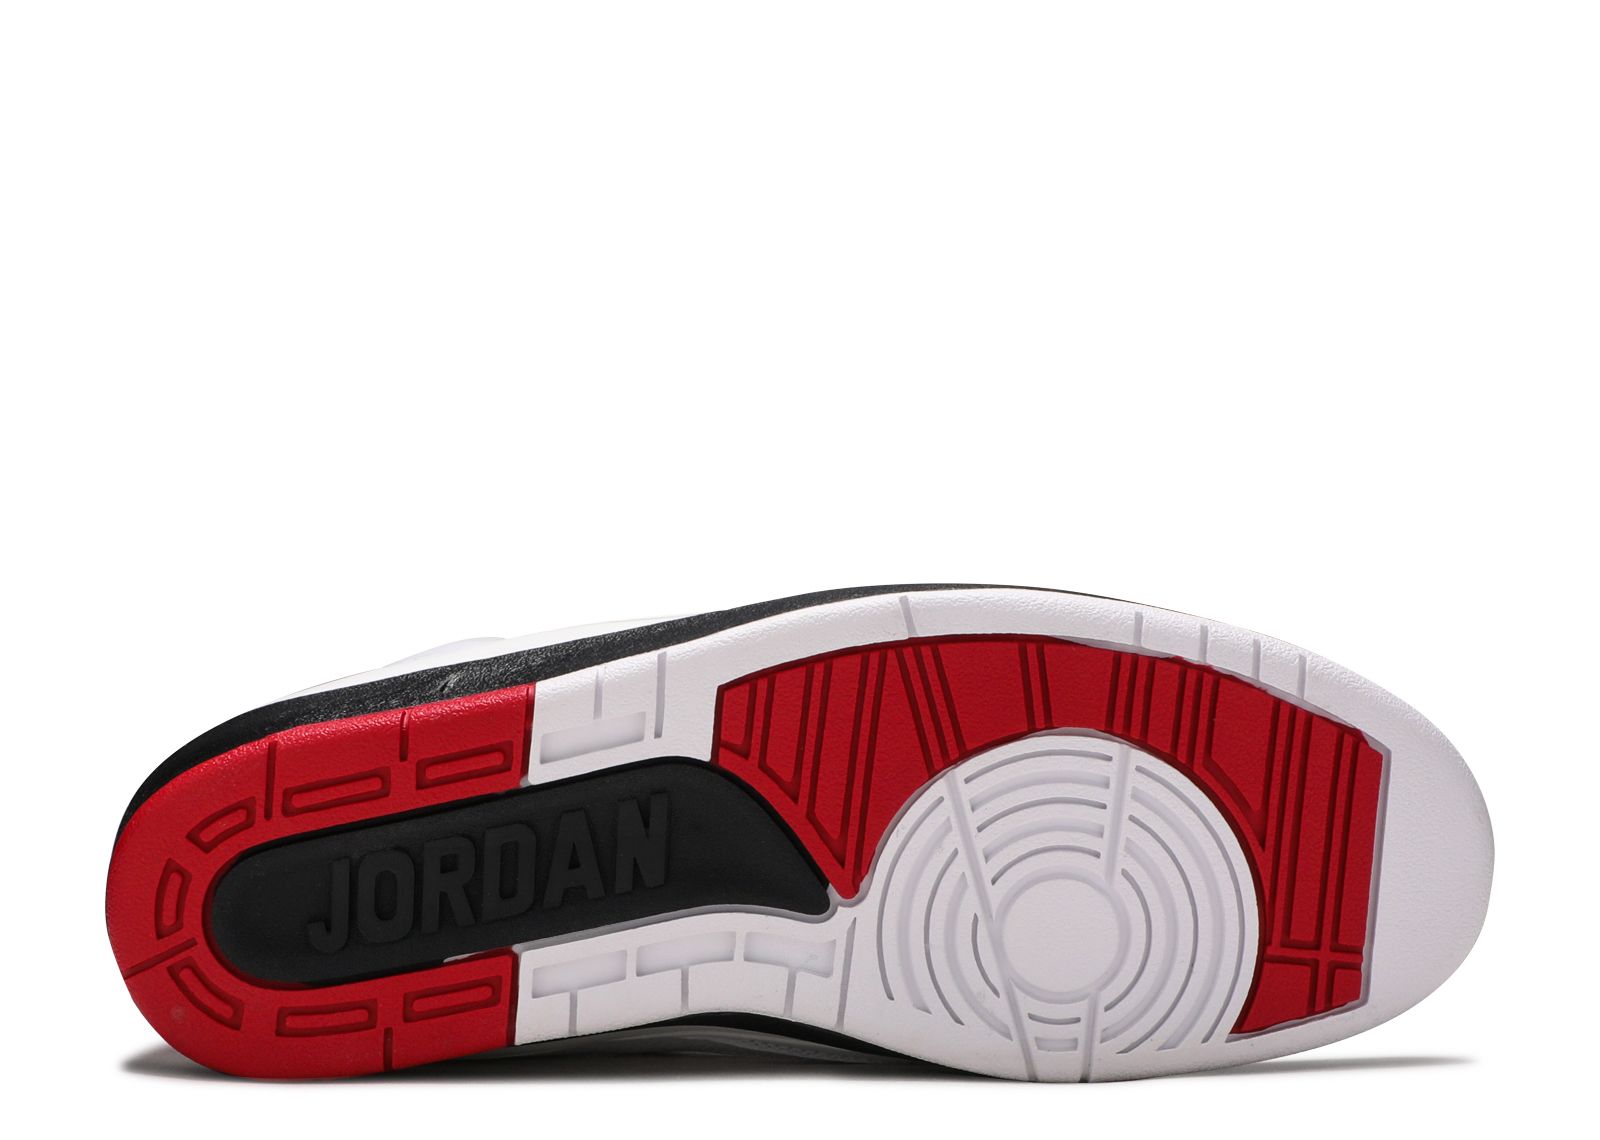 Air Jordan 2 Retro Qf 